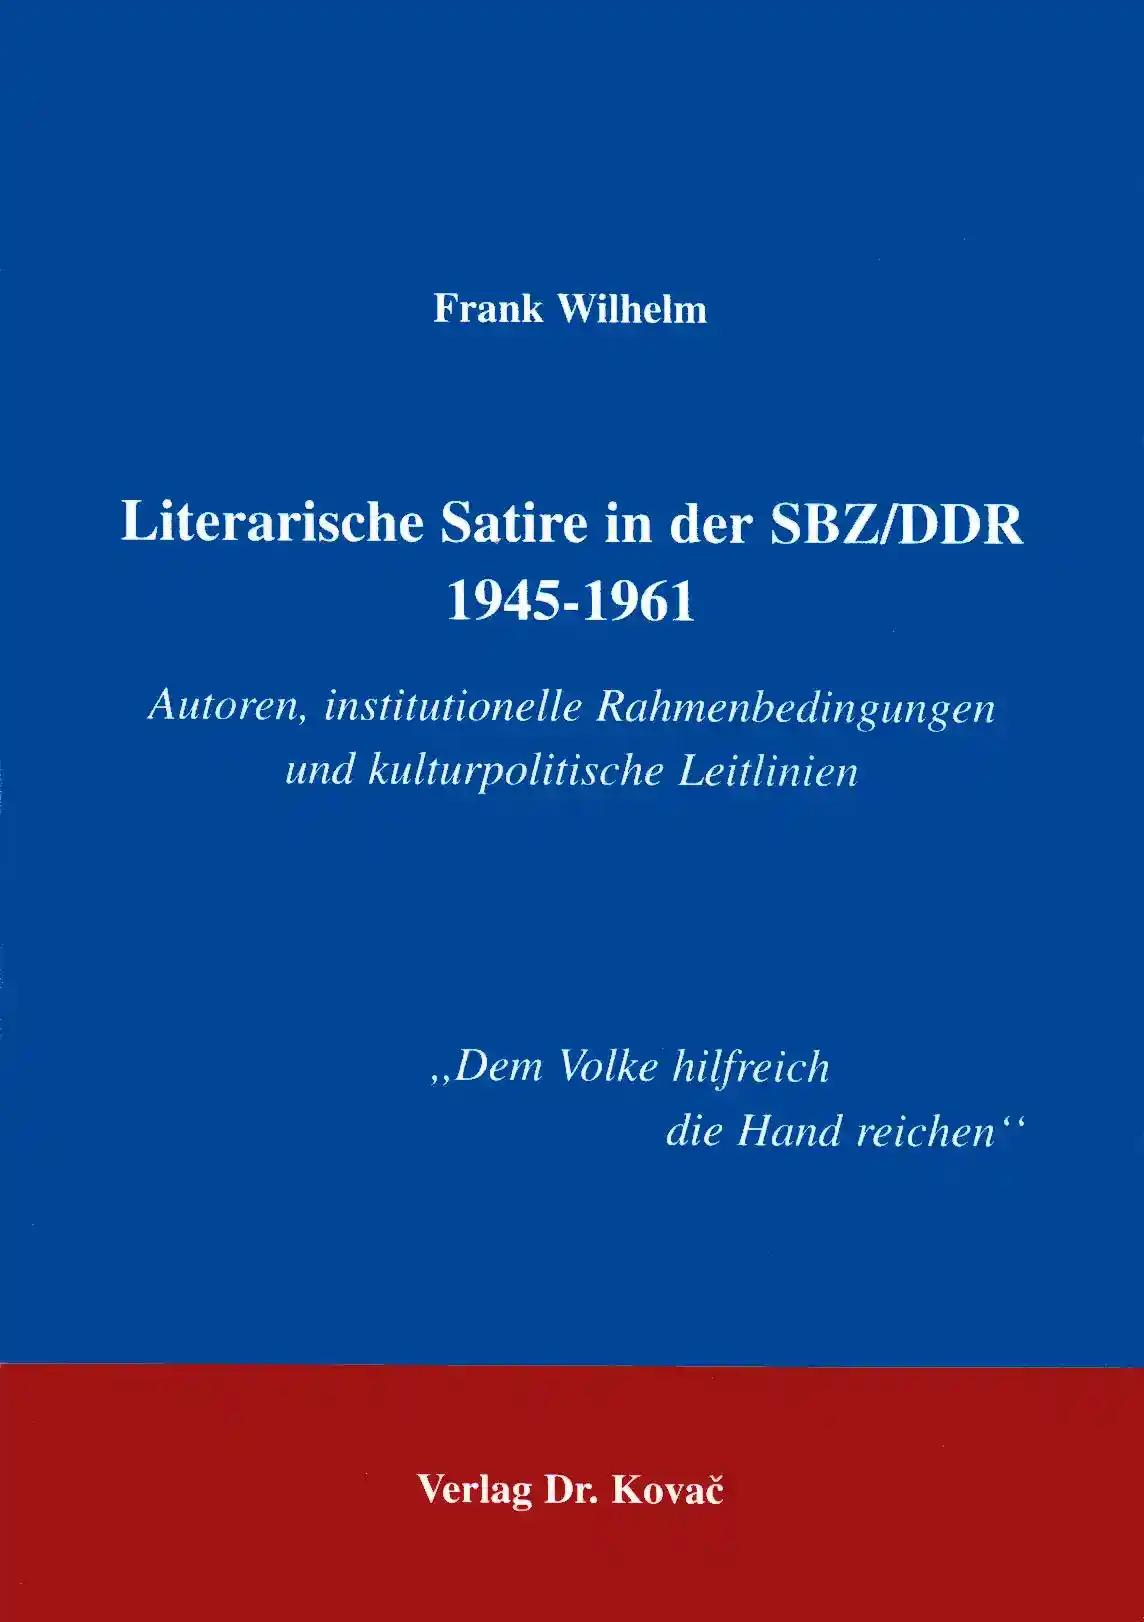 Literarische Satire in der SBZ/DDR 1945 - 1961, Autoren, institutionelle Rahmenbedingungen und kulturpolitische Leitlinien - Frank Wilhelm